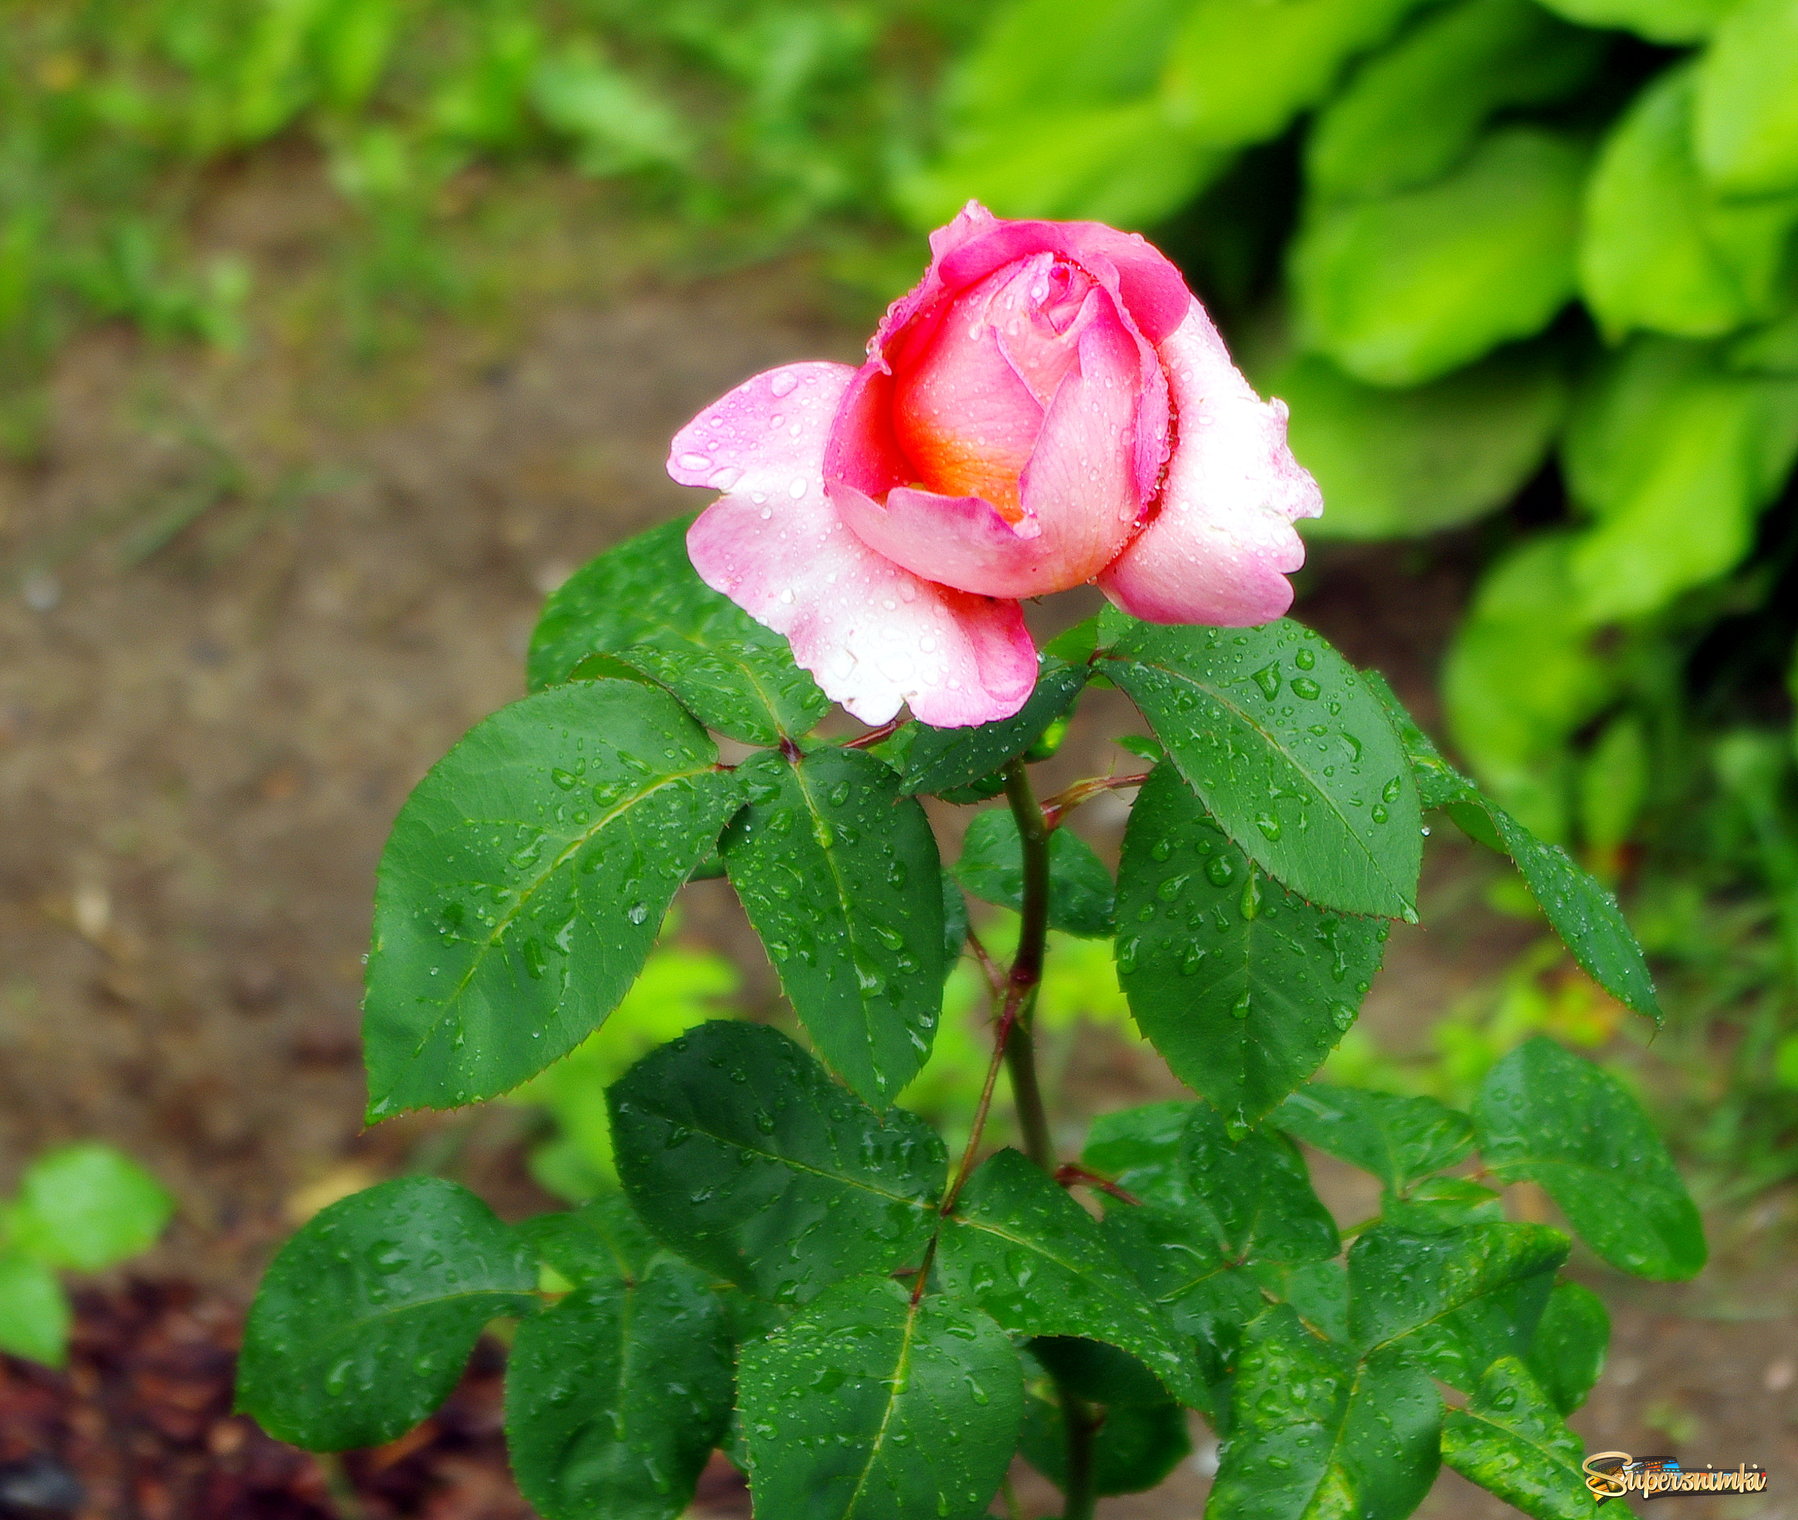 Бутон розы с каплями дождя.